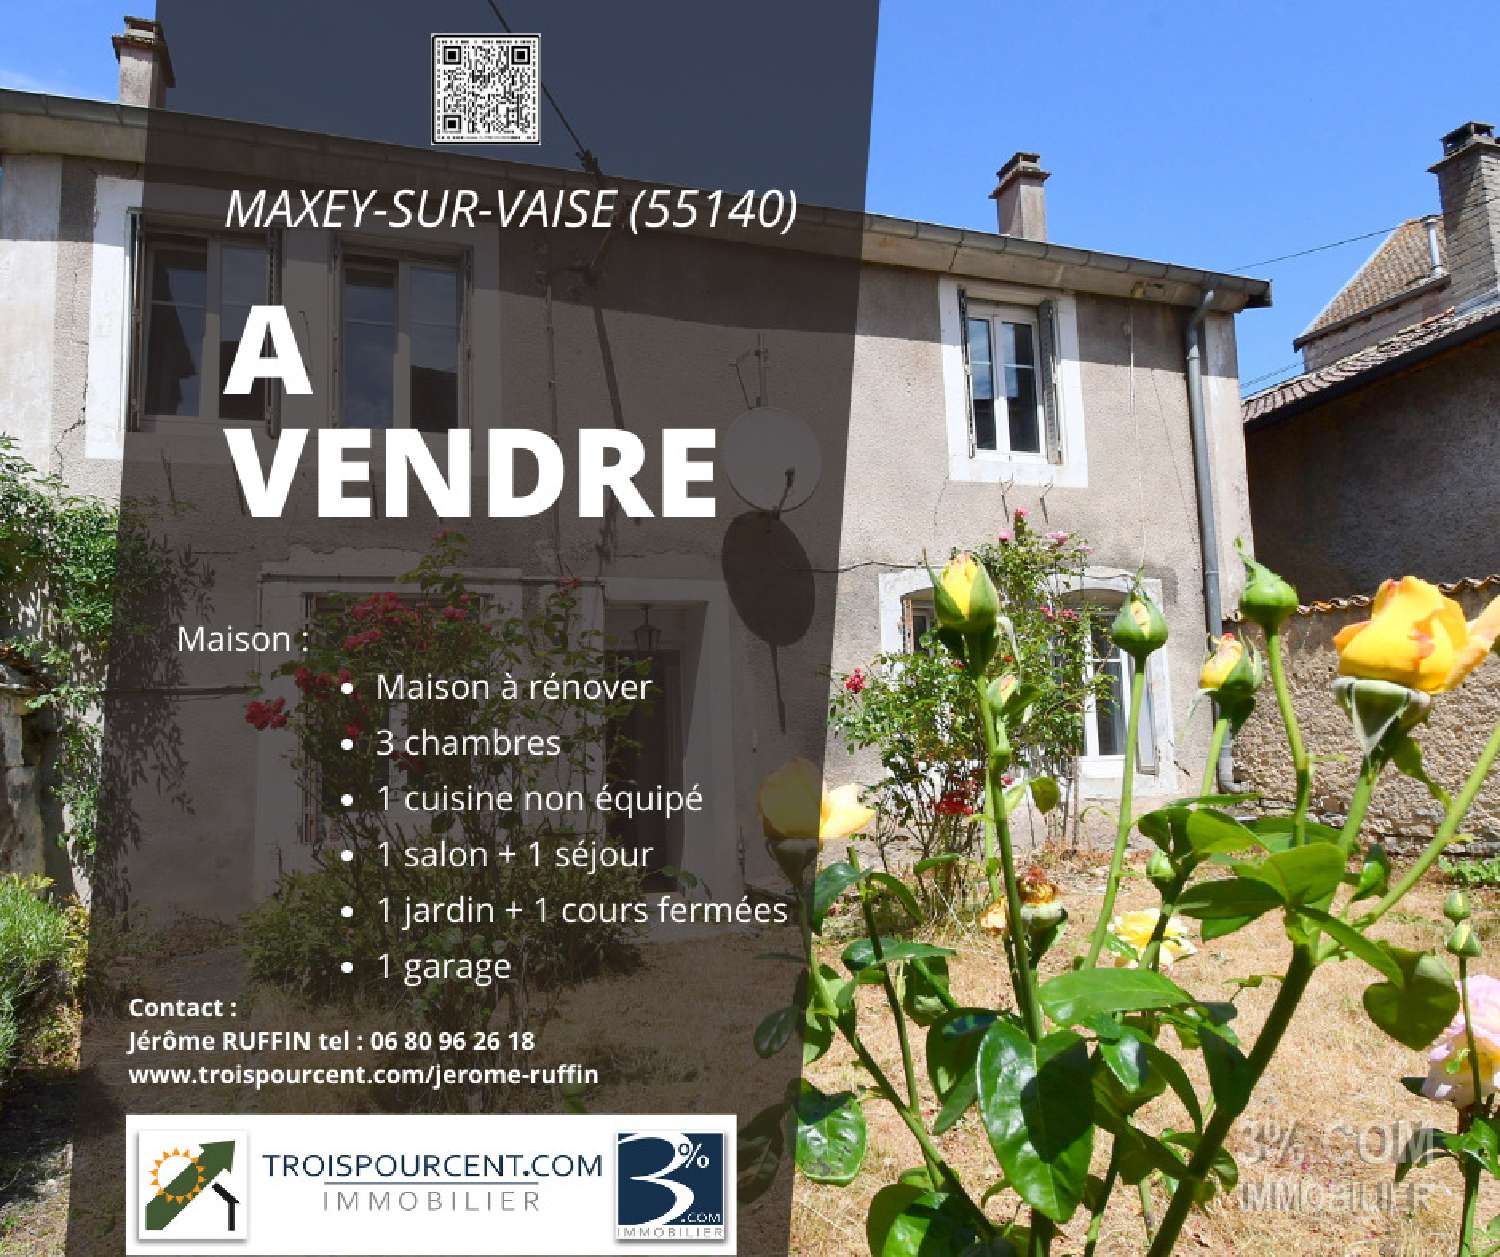 Maxey-sur-Vaise Meuse village house foto 6827254